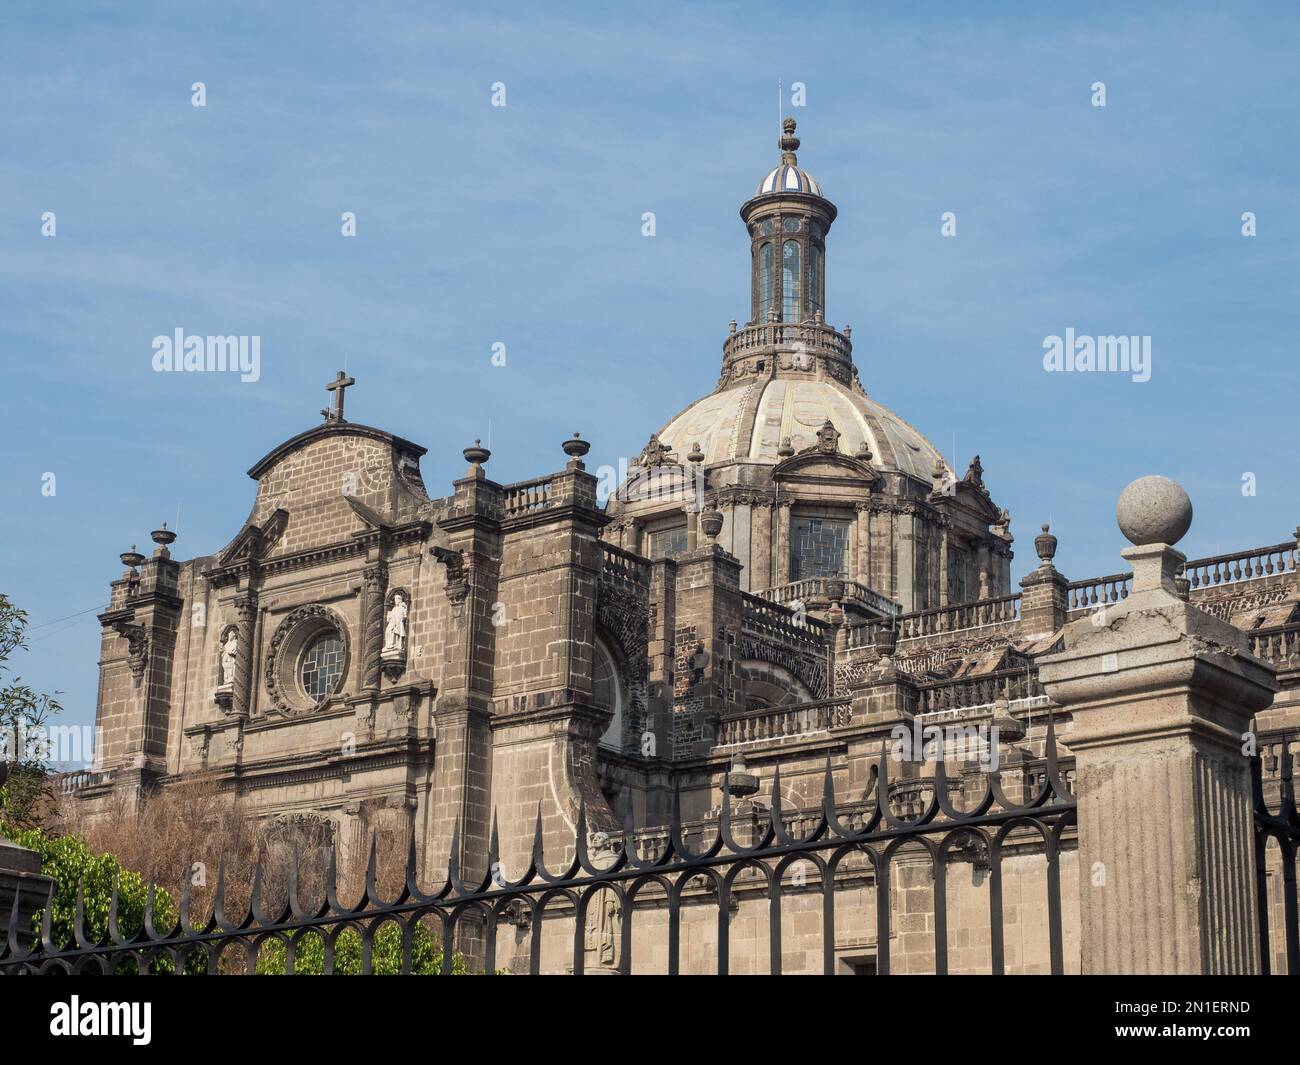 La cathédrale, construite de 1573 à 1813, se dresse au sommet du centre religieux de la ville conquise des Aztèques (Mexica), Mexico, Mexique Banque D'Images